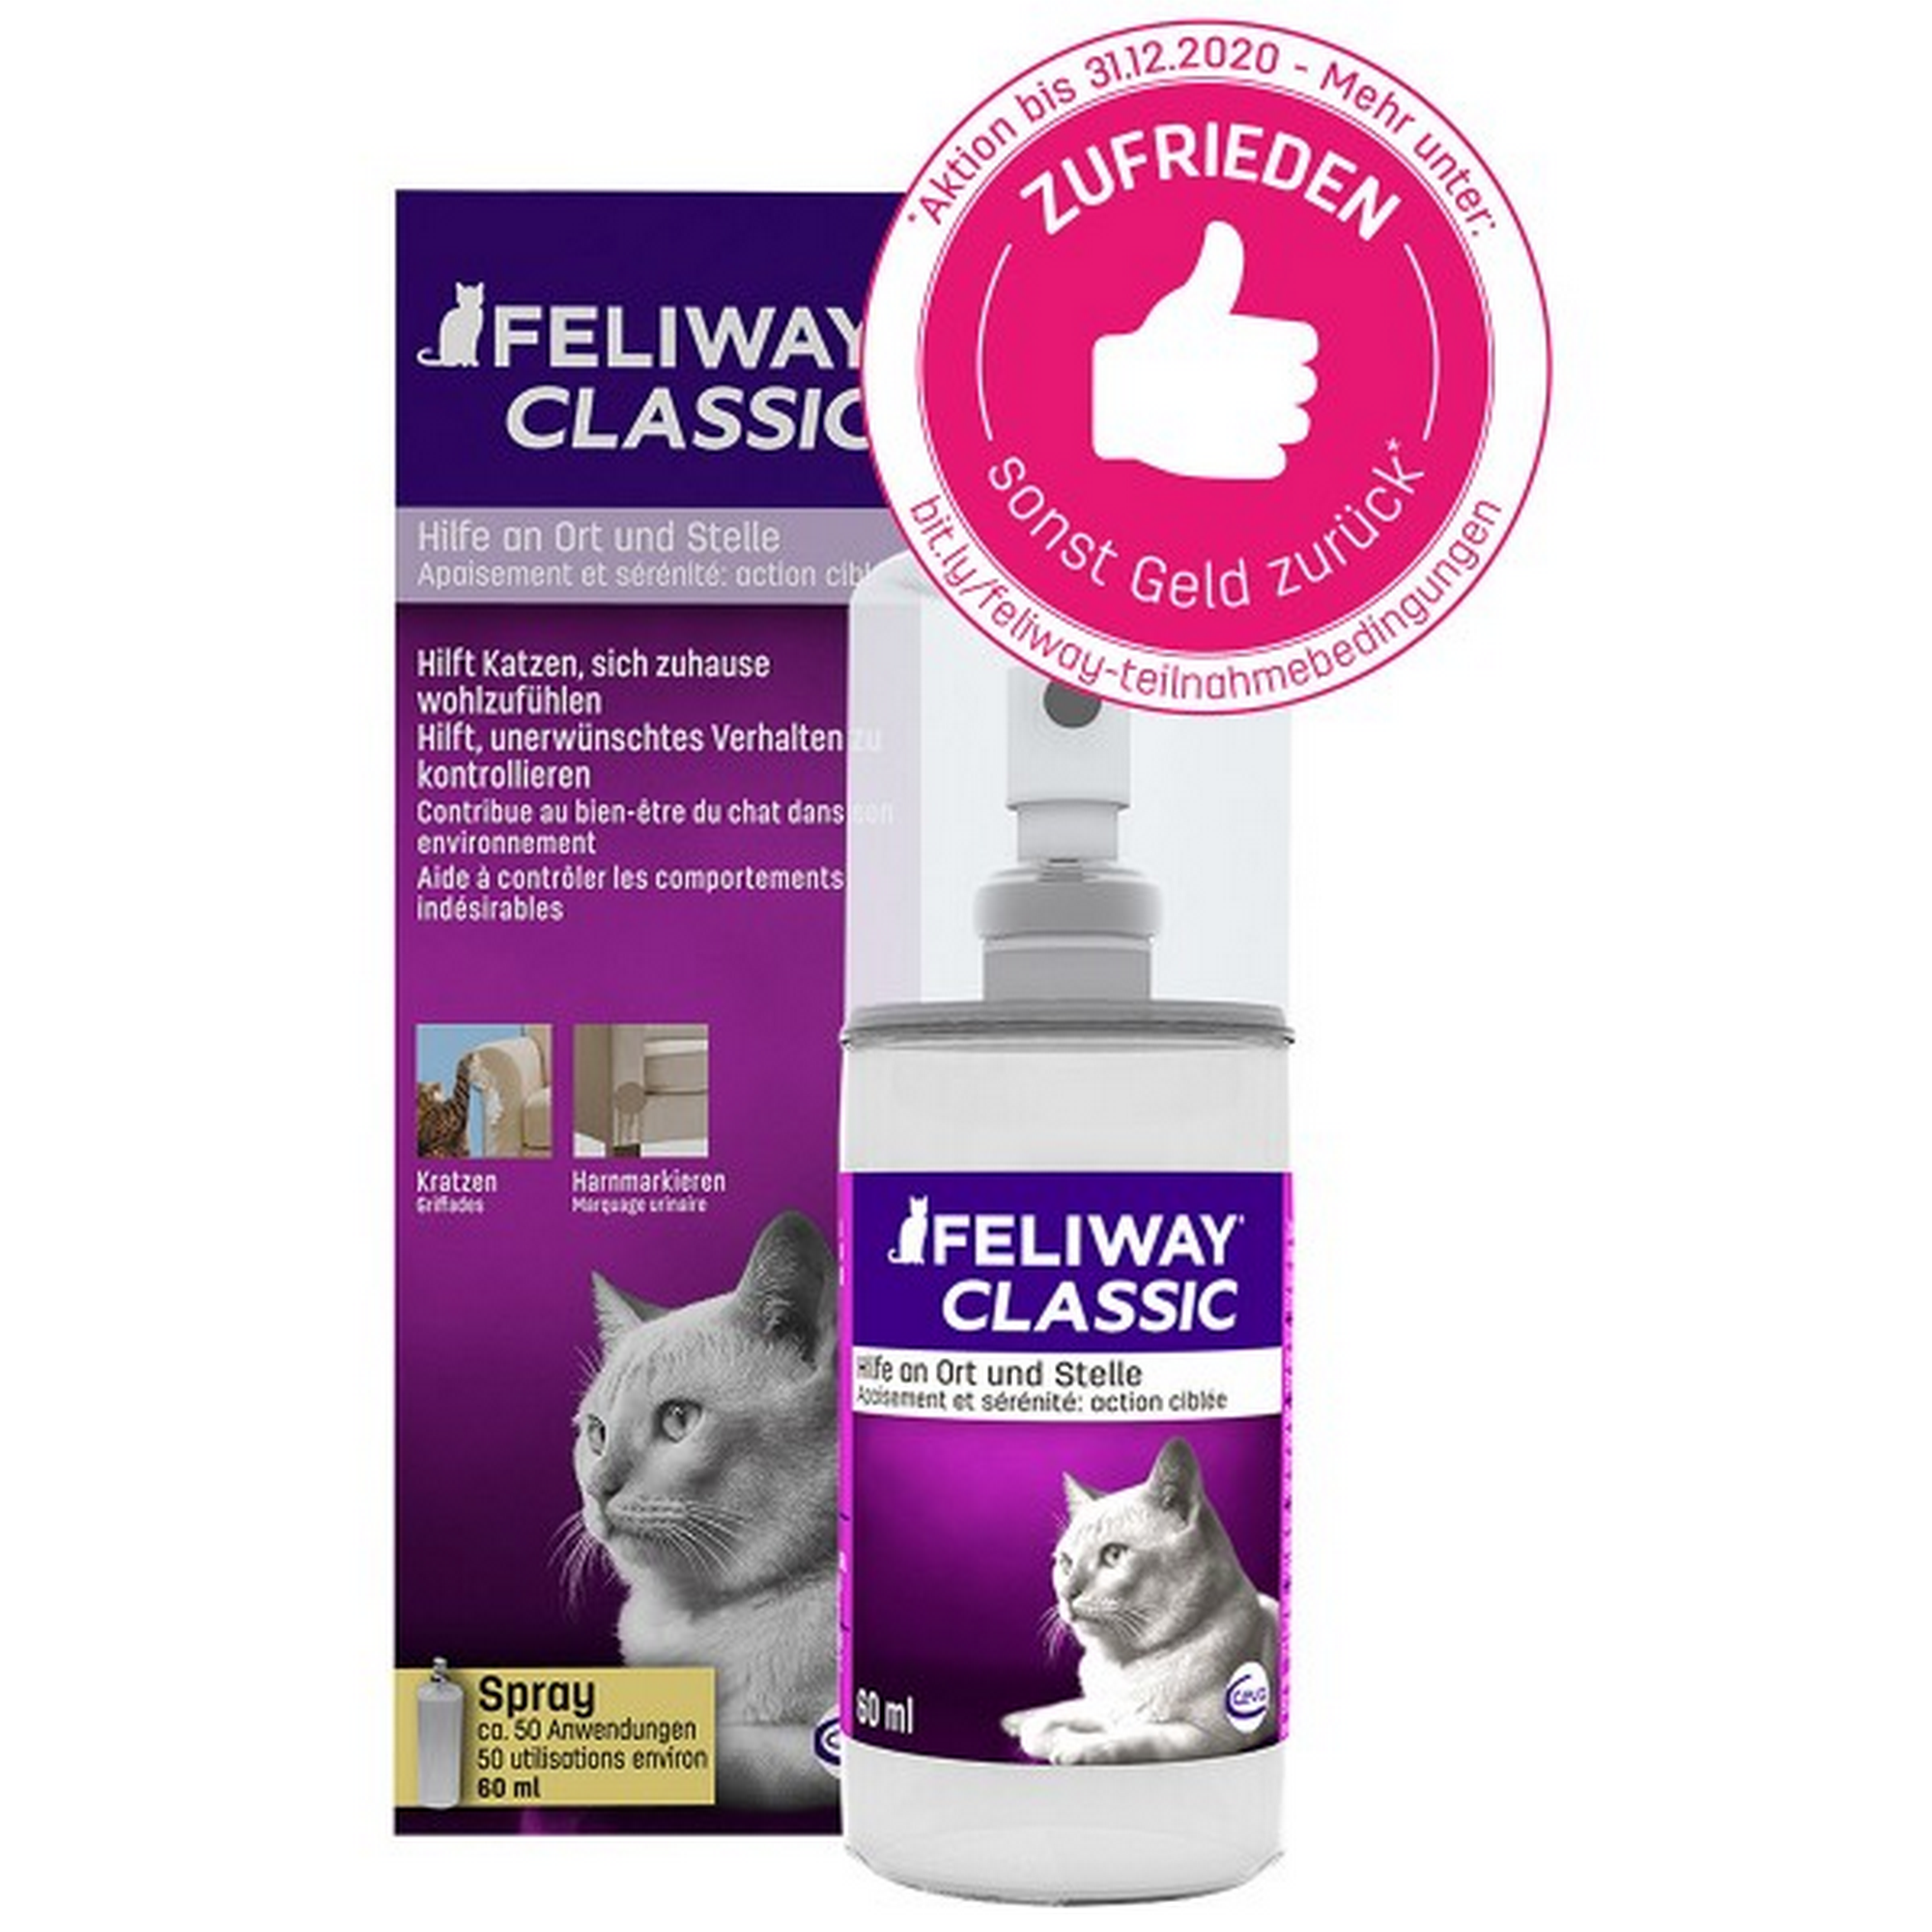 Pheromon-Spray gegen stressbedingtes Kratz- und Harnmarkieren von Katzen, 60 ml + product picture